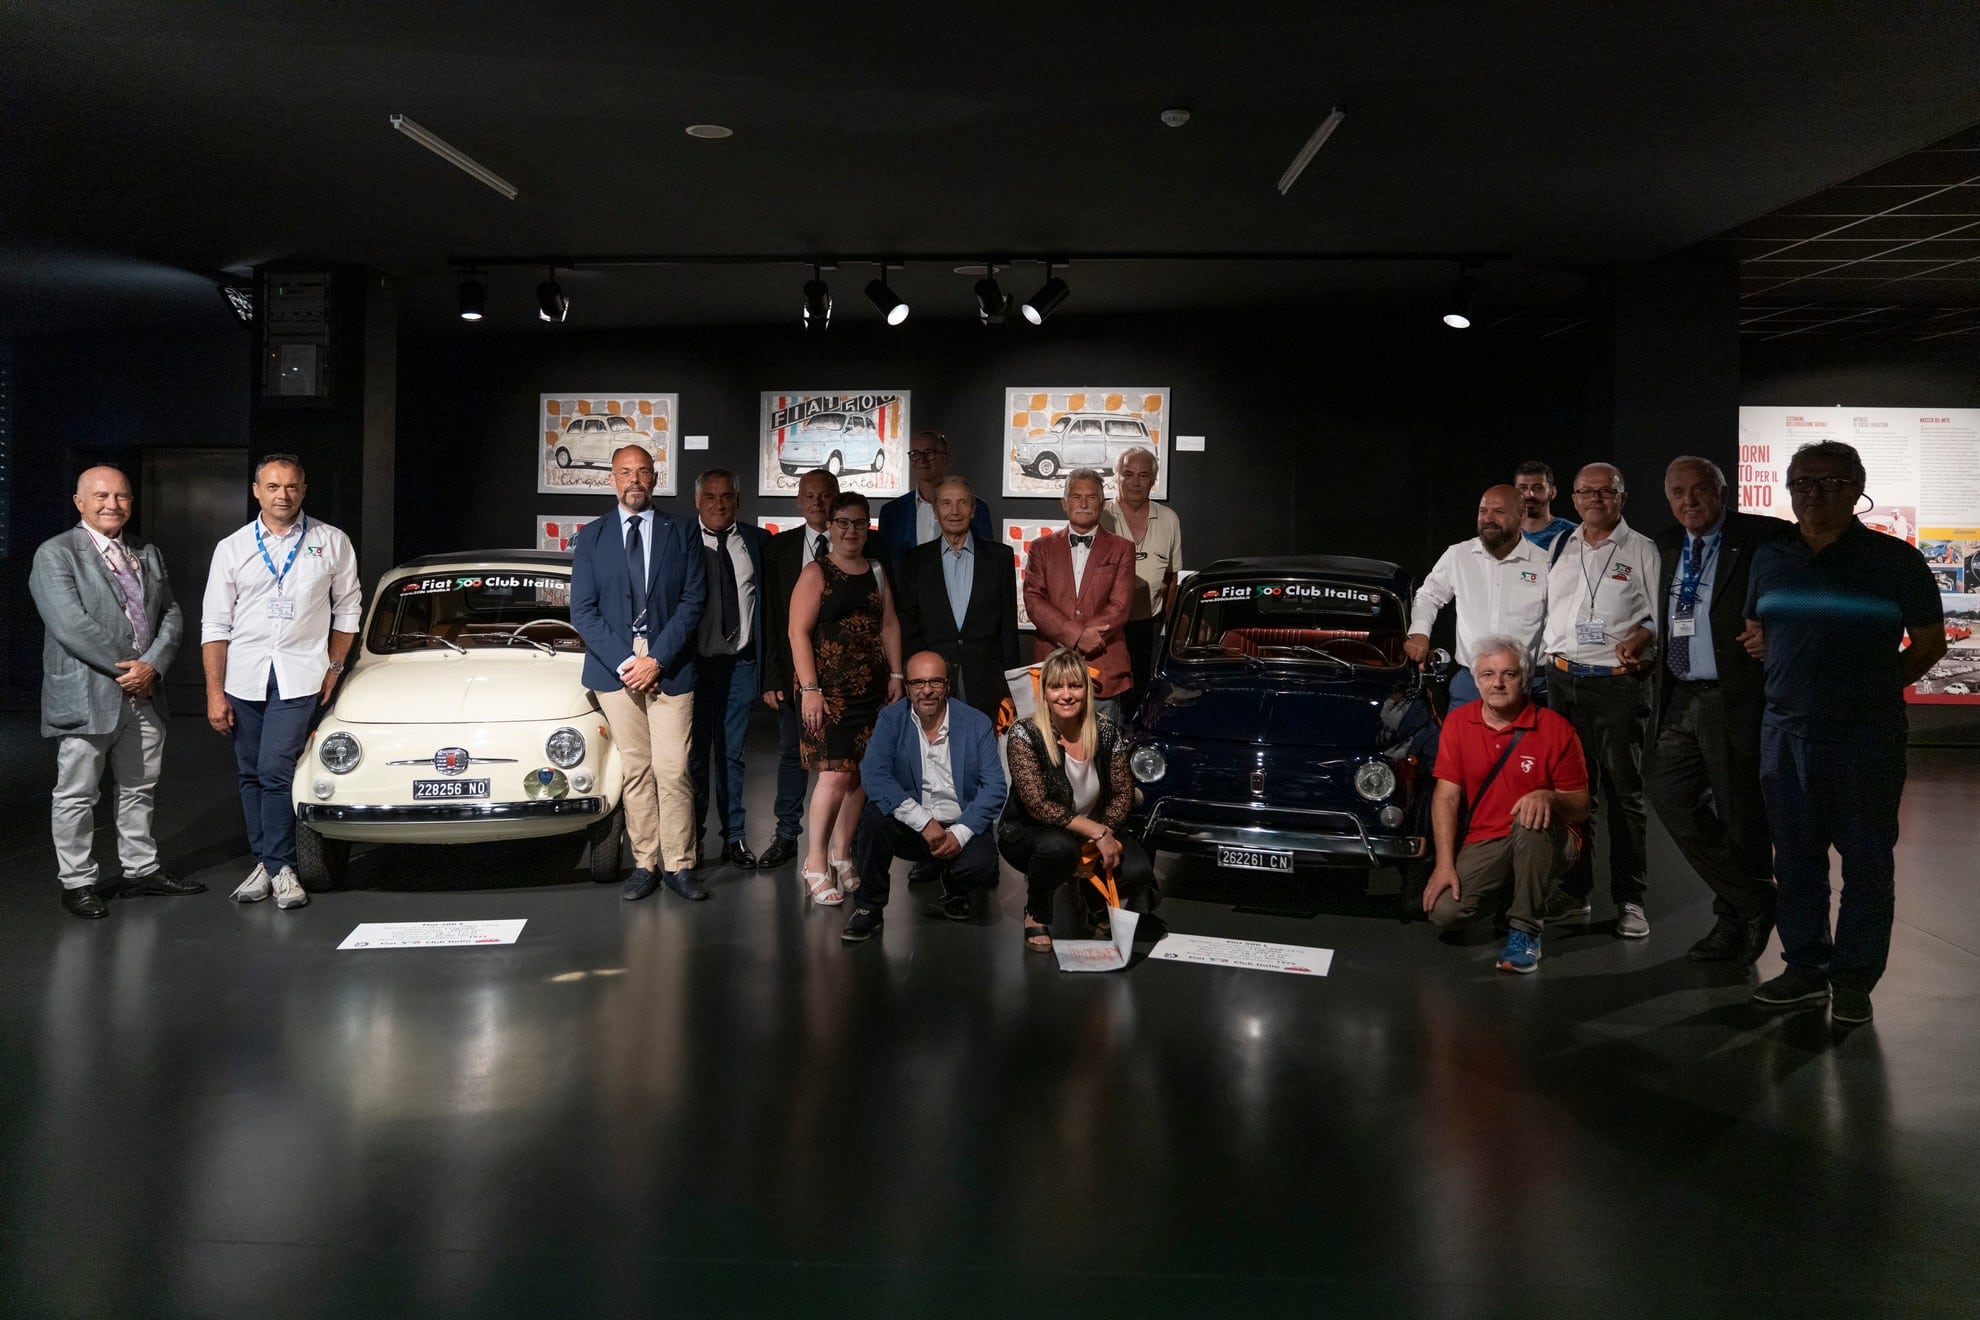 Al Mauto la mostra per i 65 anni della Fiat 500, organizzata da Fiat 500 Club Italia